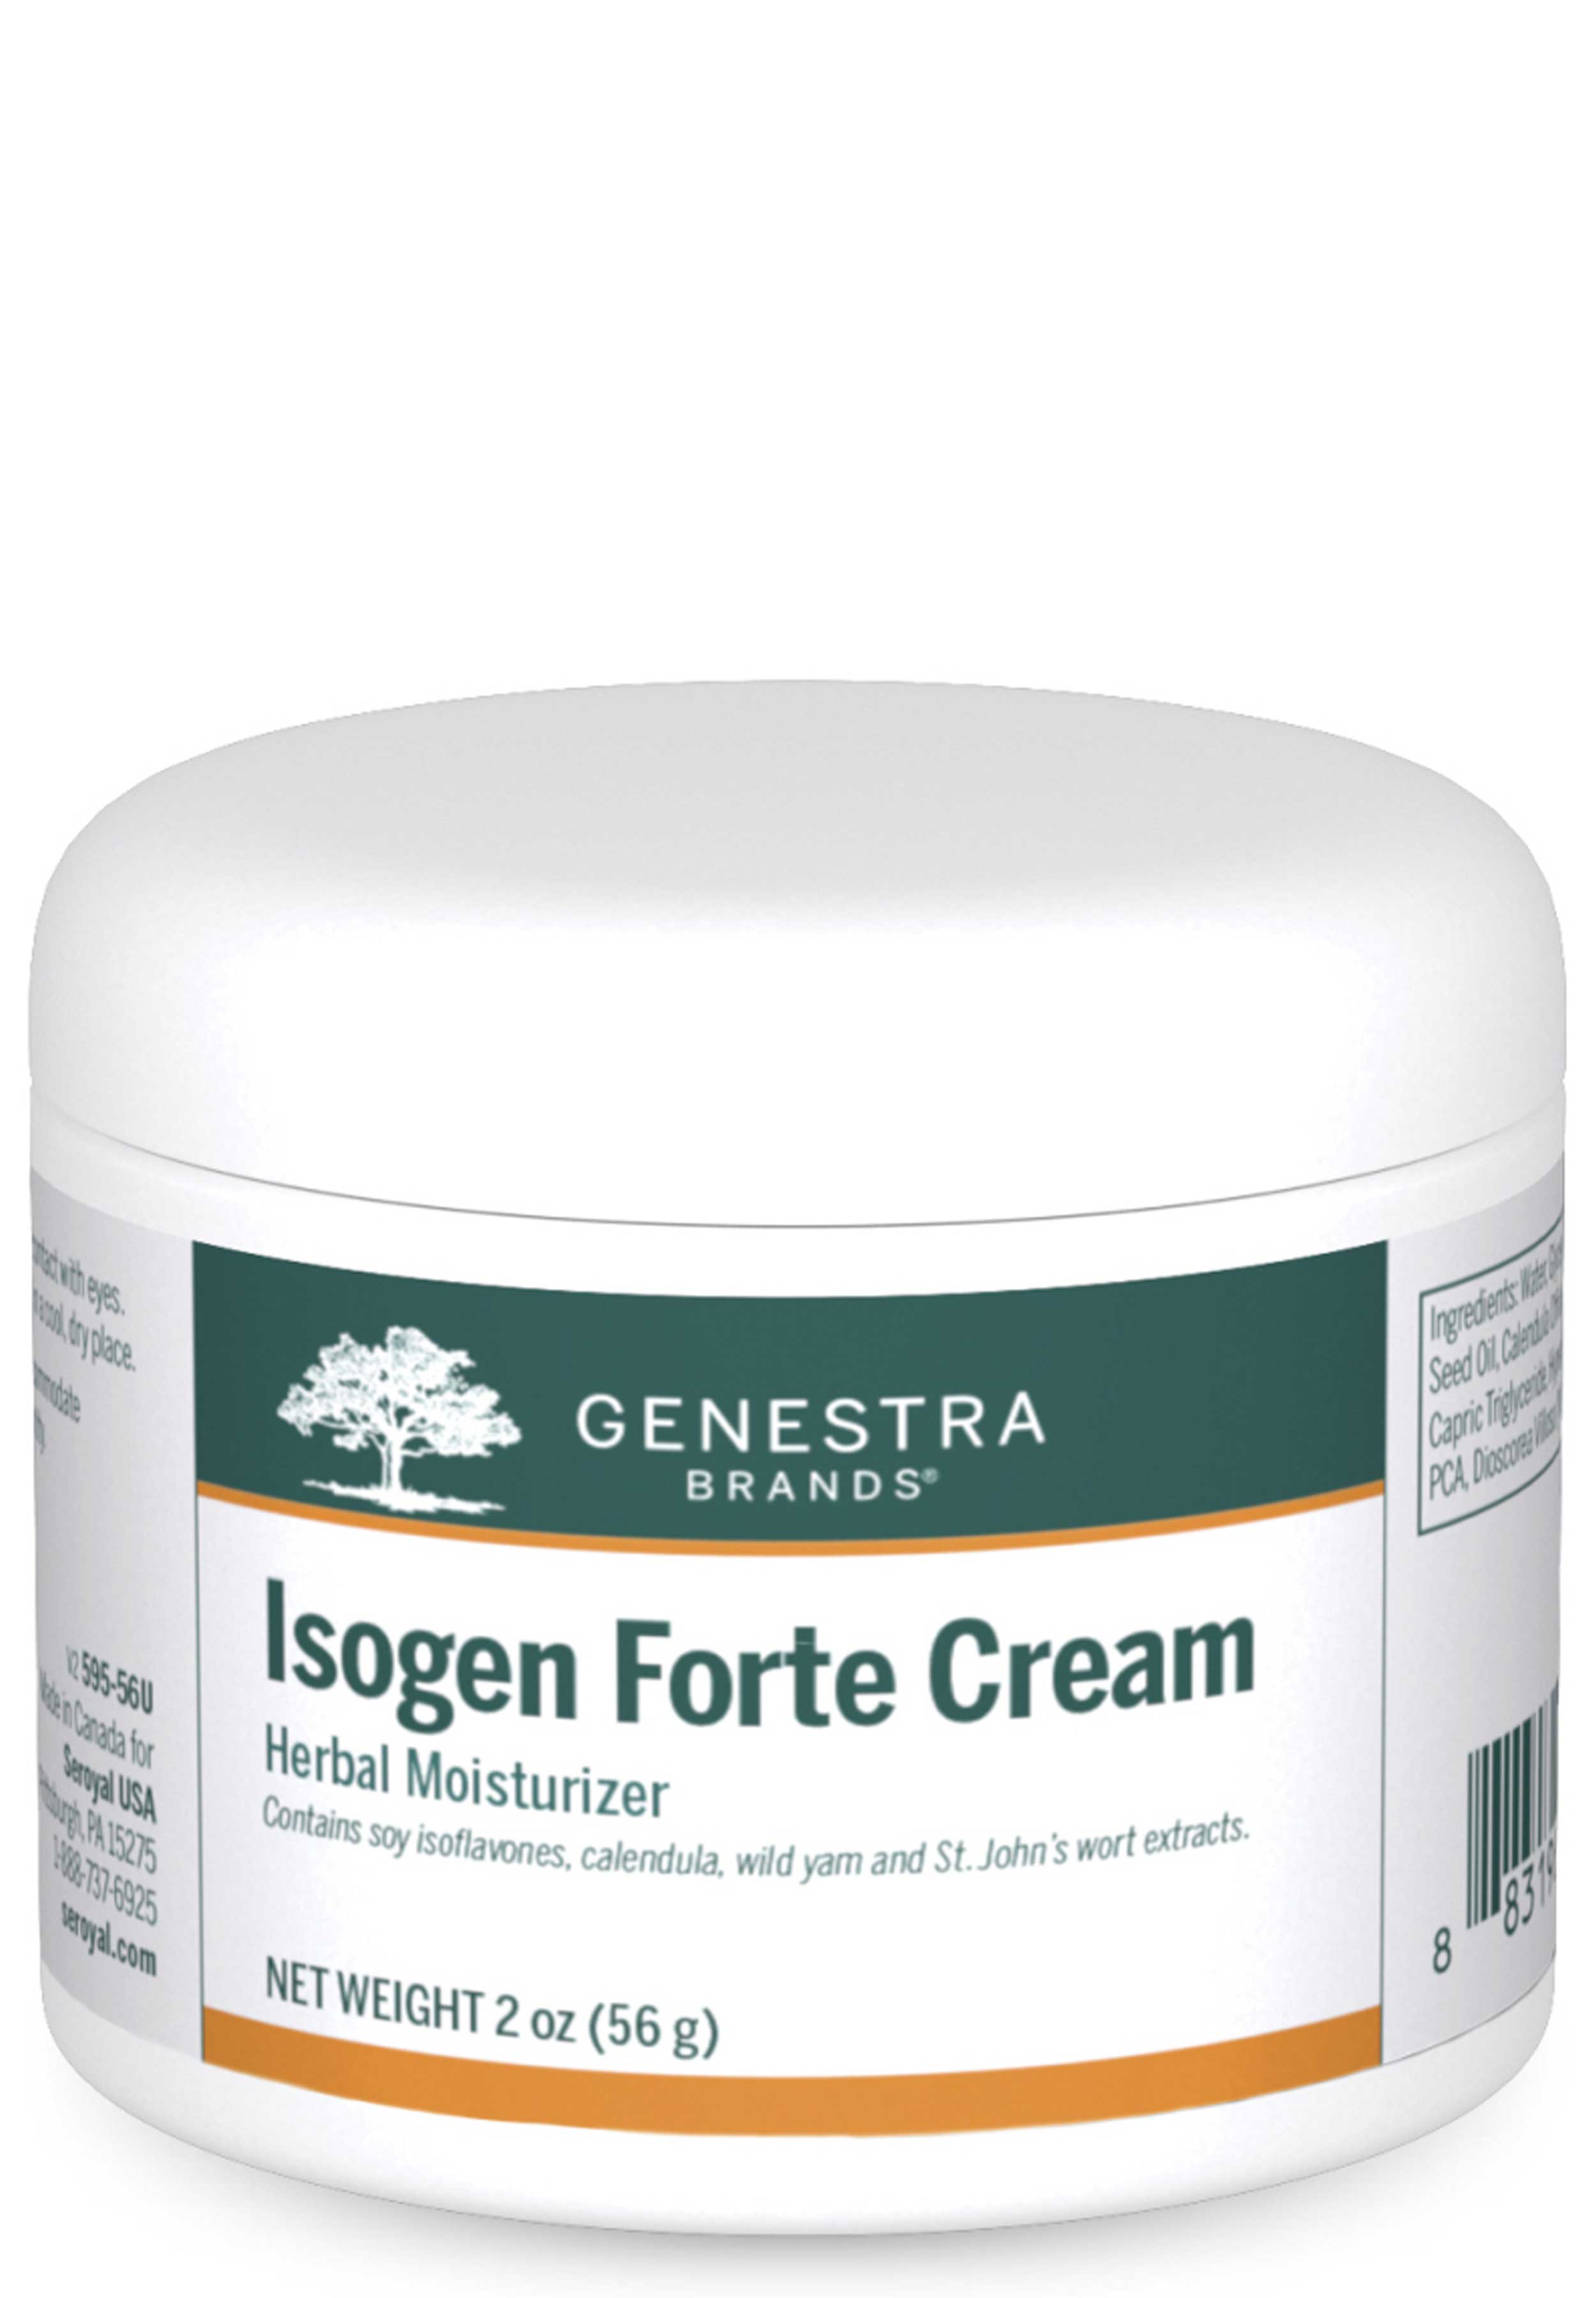 Genestra Brands Isogen Forte Cream